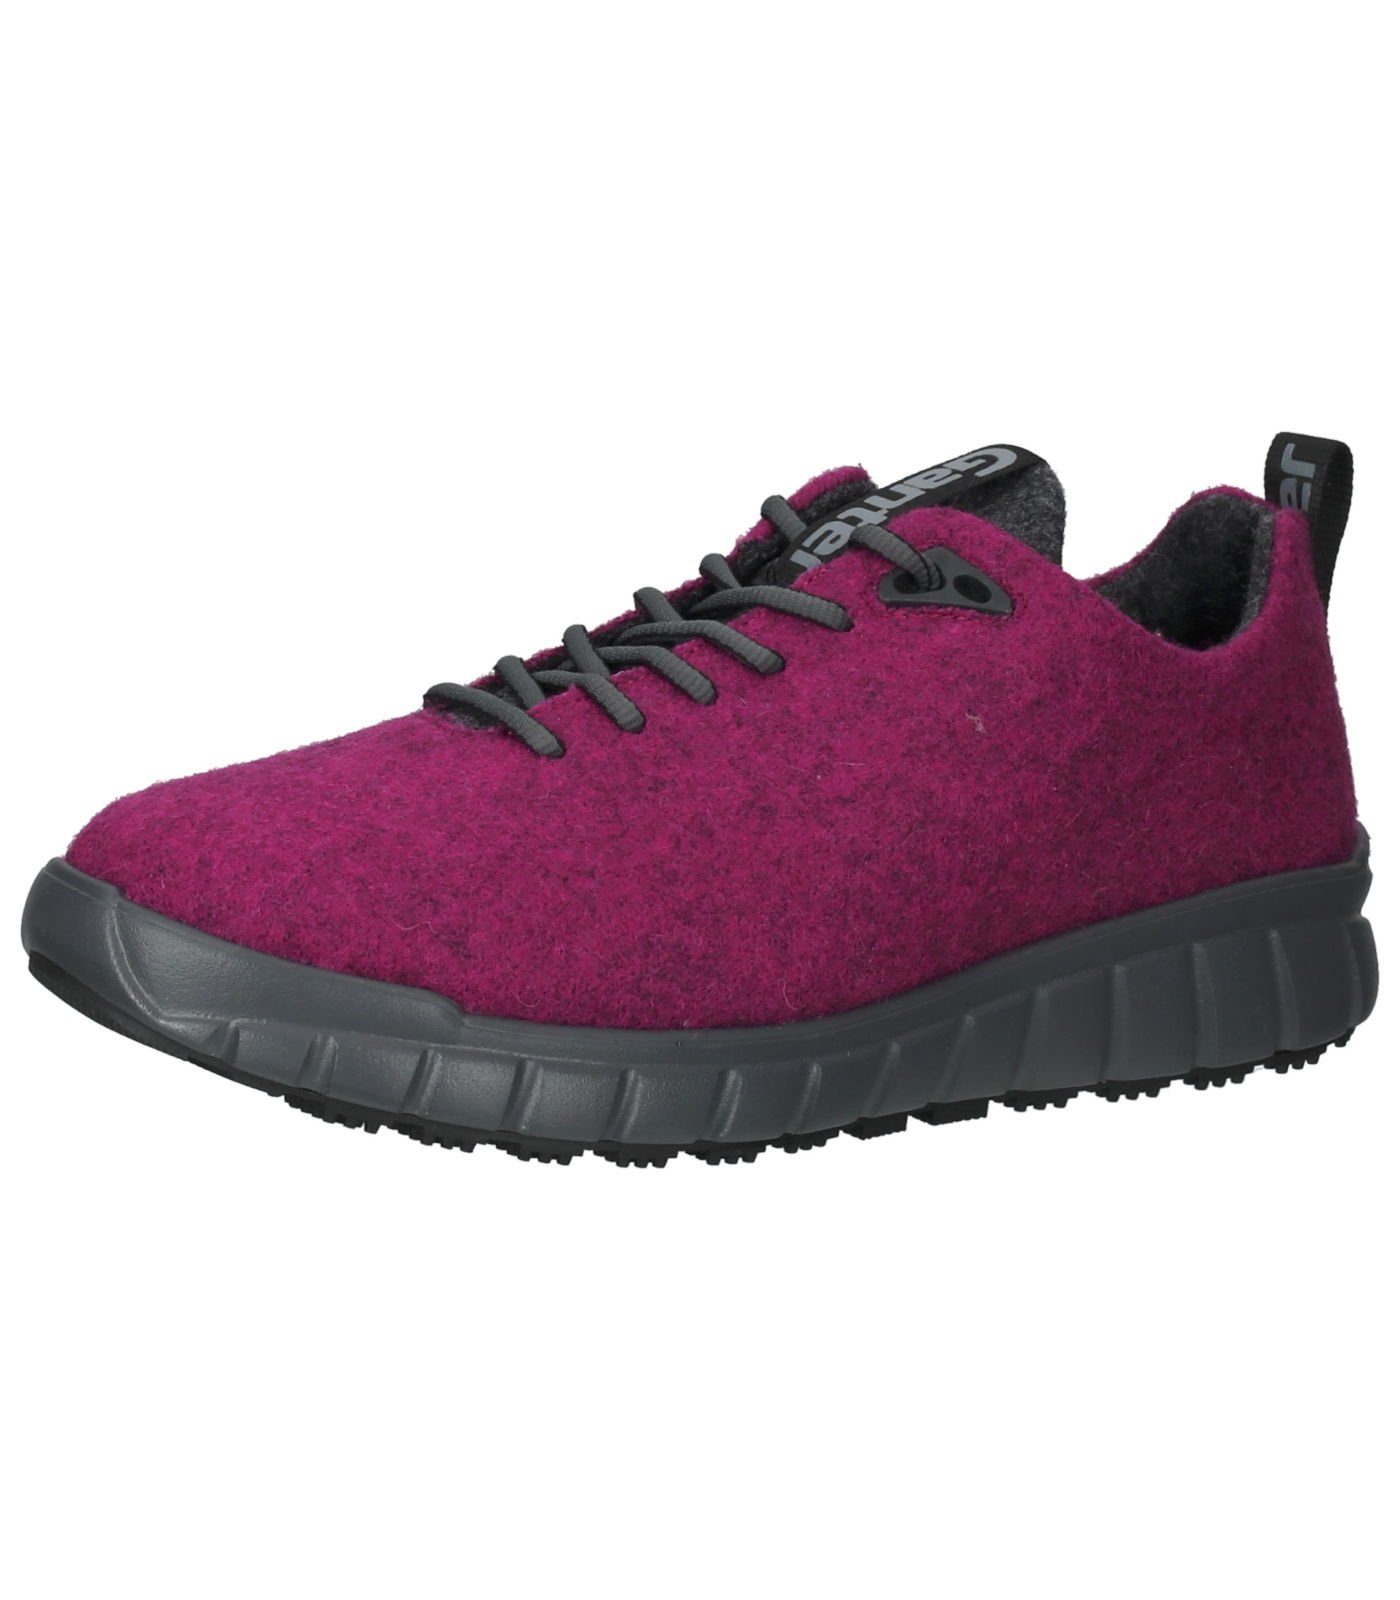 Lederimitat/Textil Ganter Sneaker Sneaker Pink